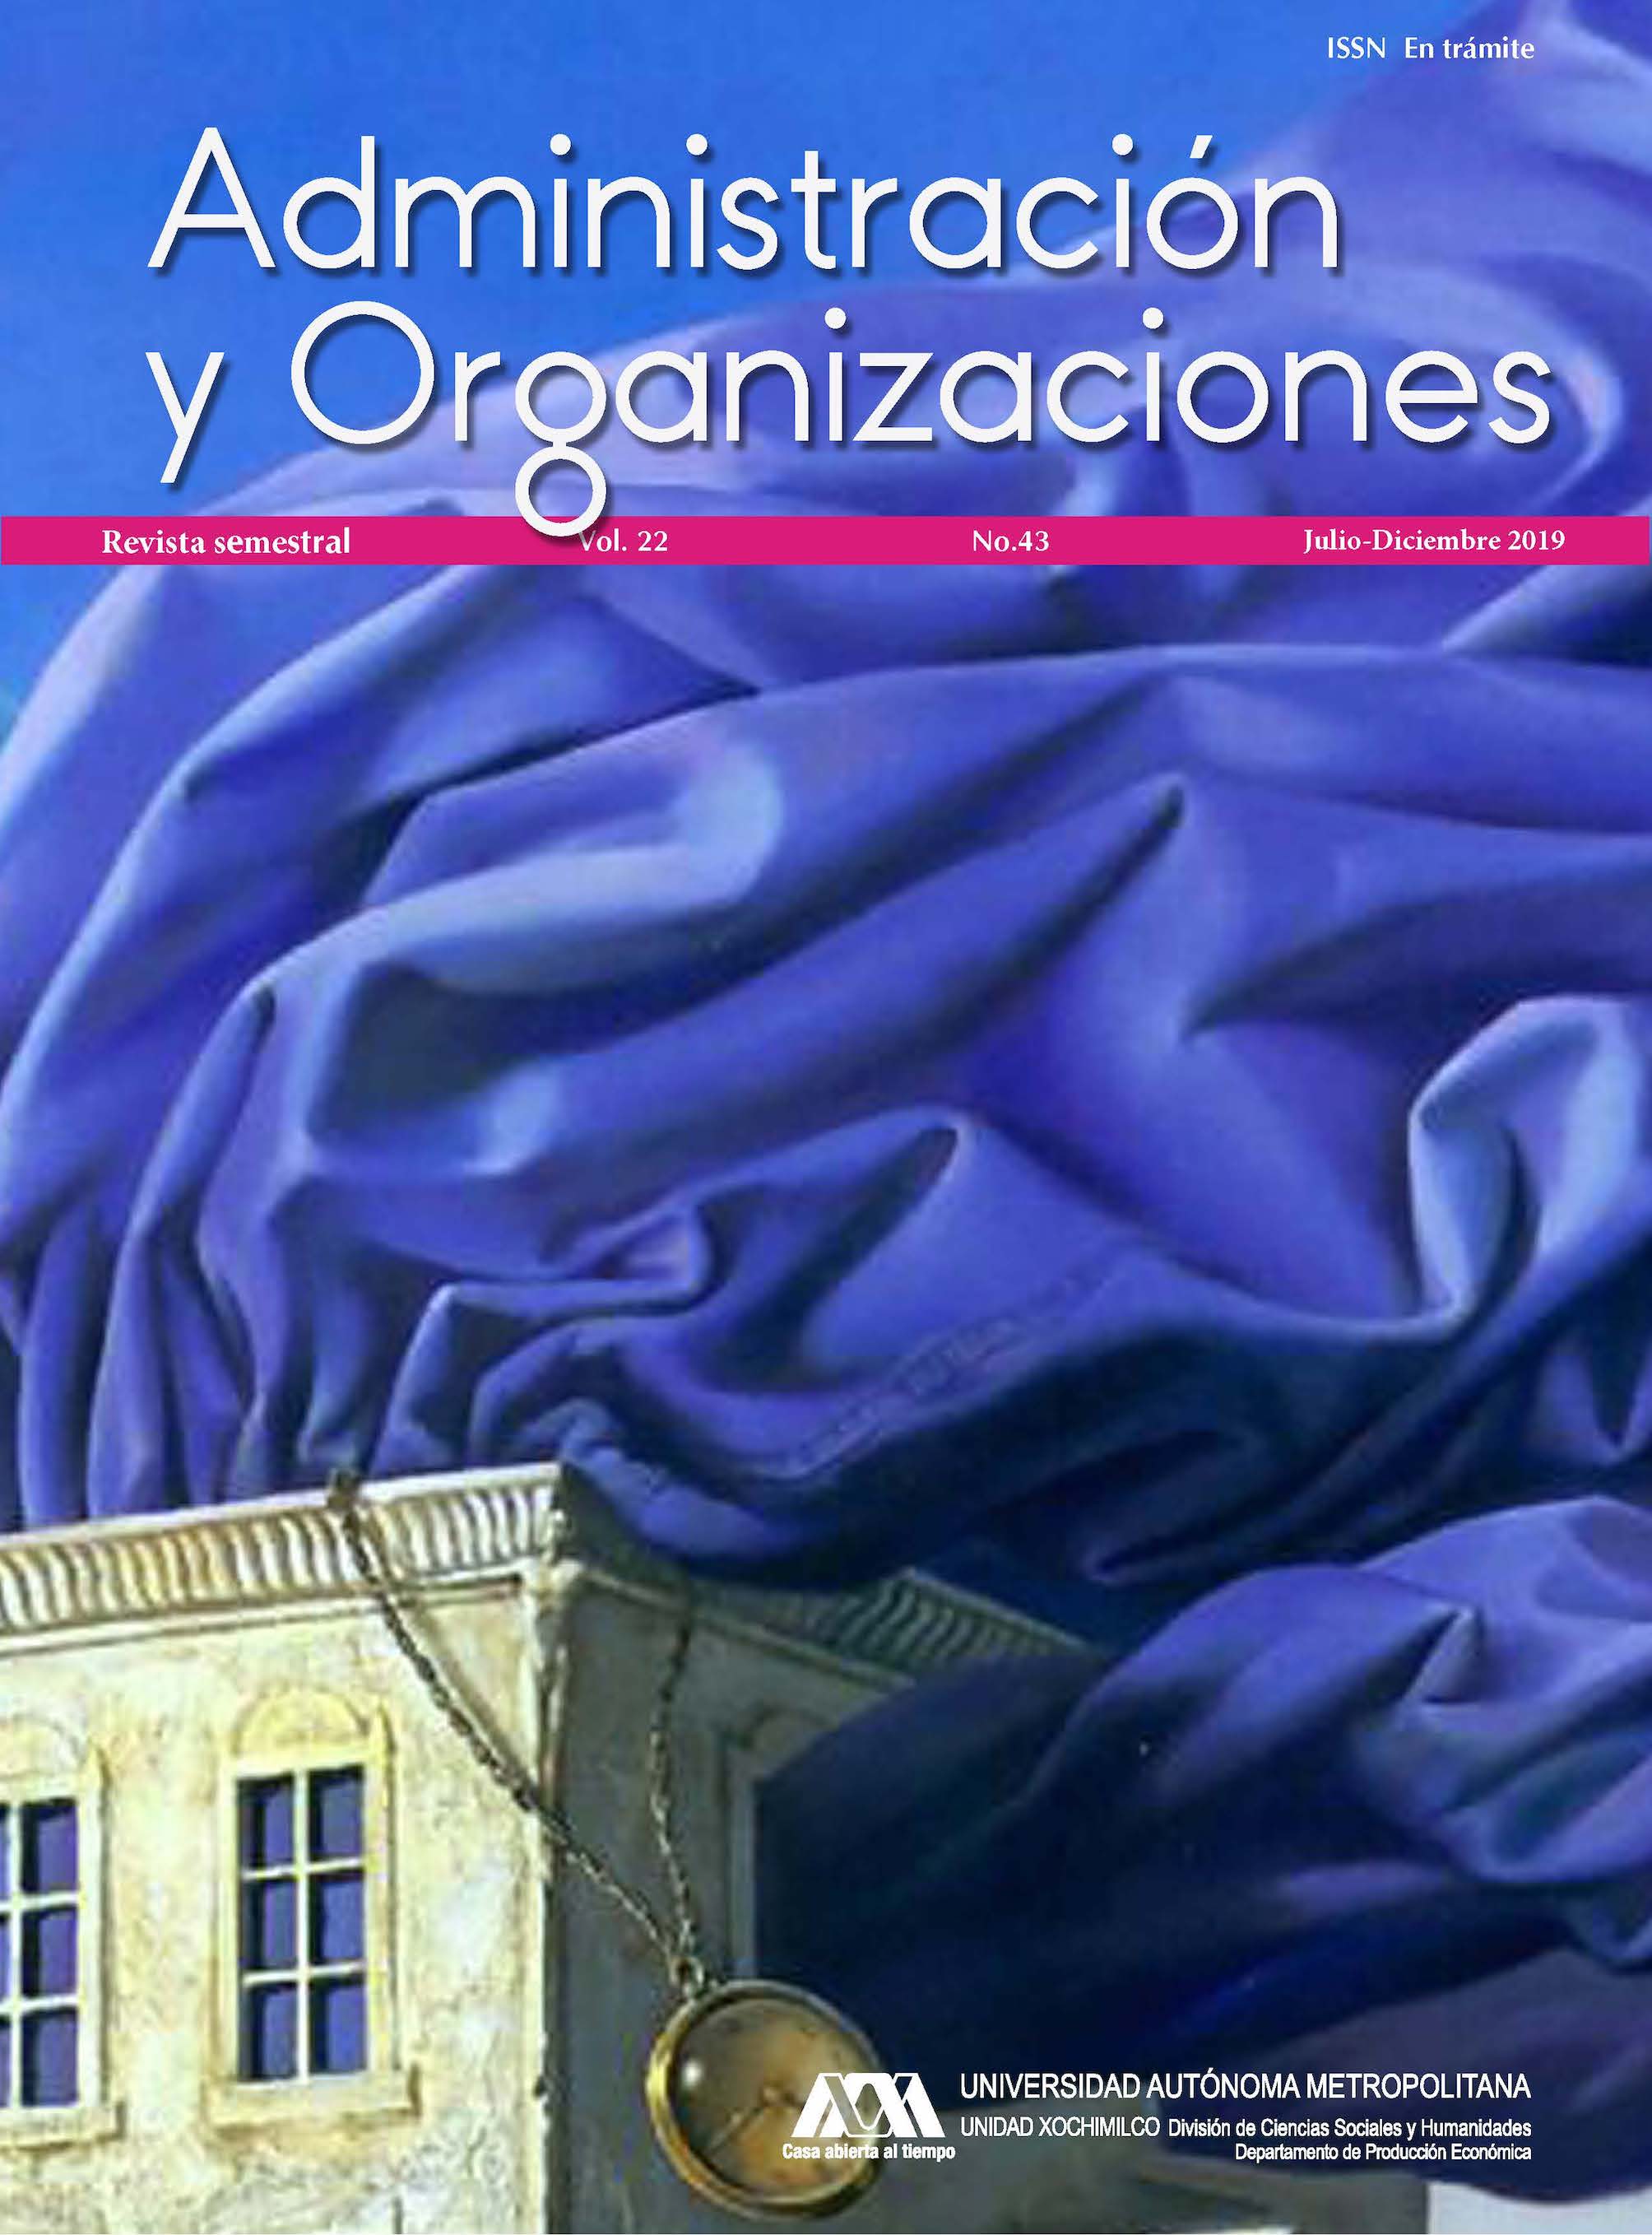 					Ver Vol. 22 Núm. 43 (22): Administración y Organizaciones
				